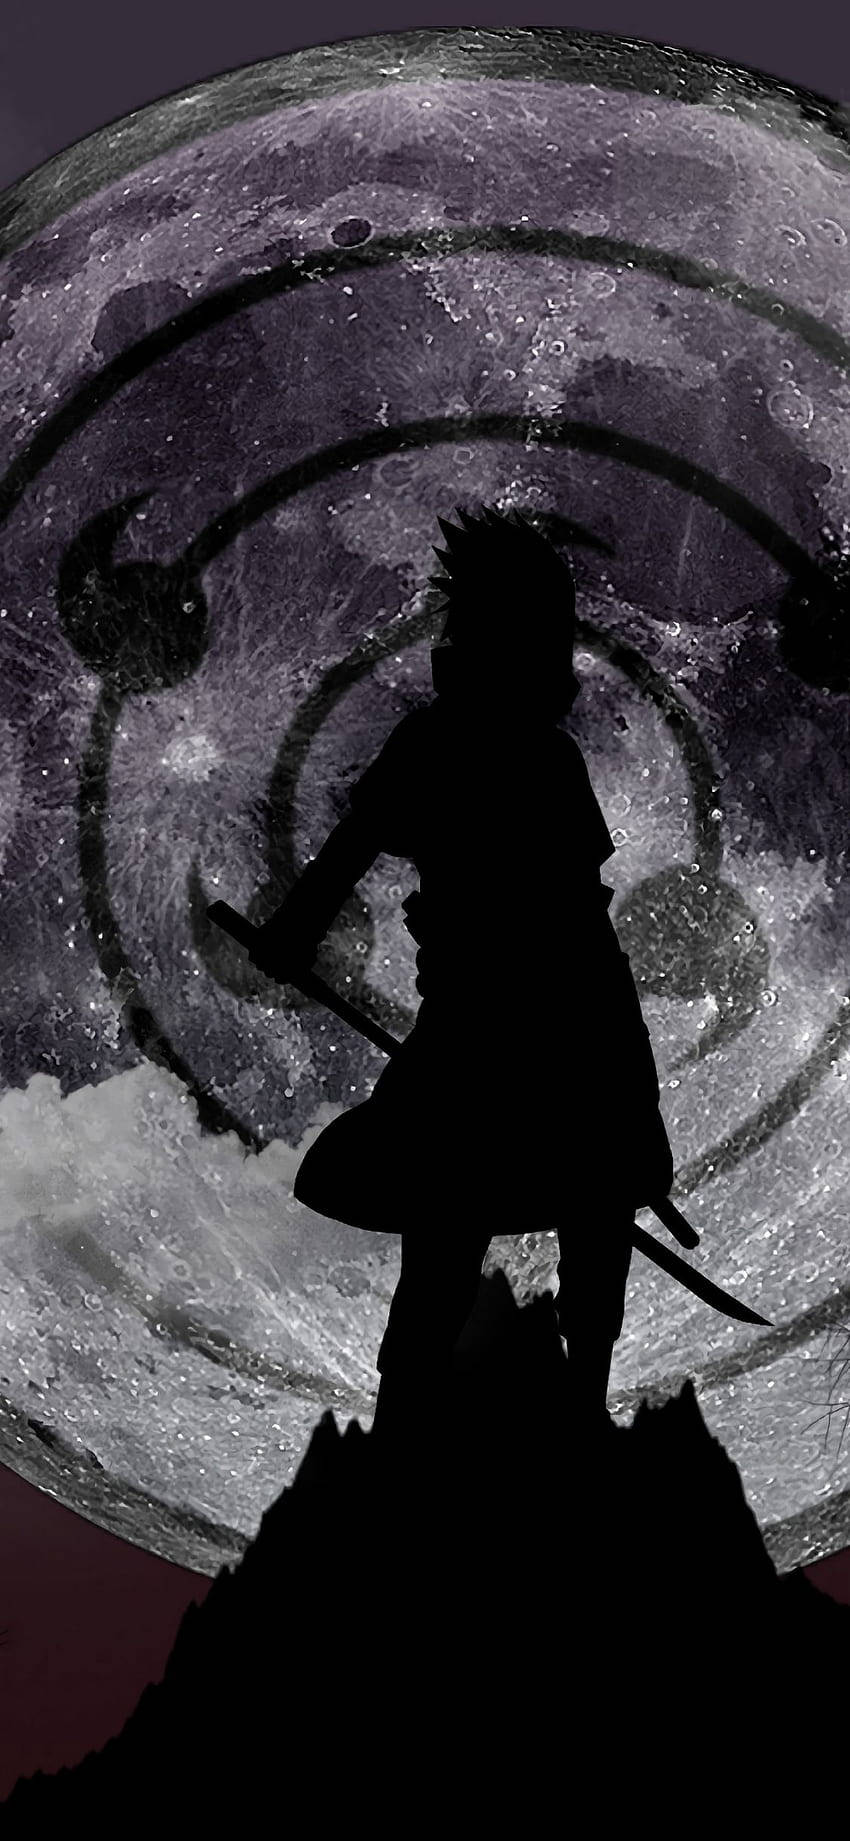 Caption: Sasuke Uchiha Unleashing Mangekyou Sharingan Powers Wallpaper